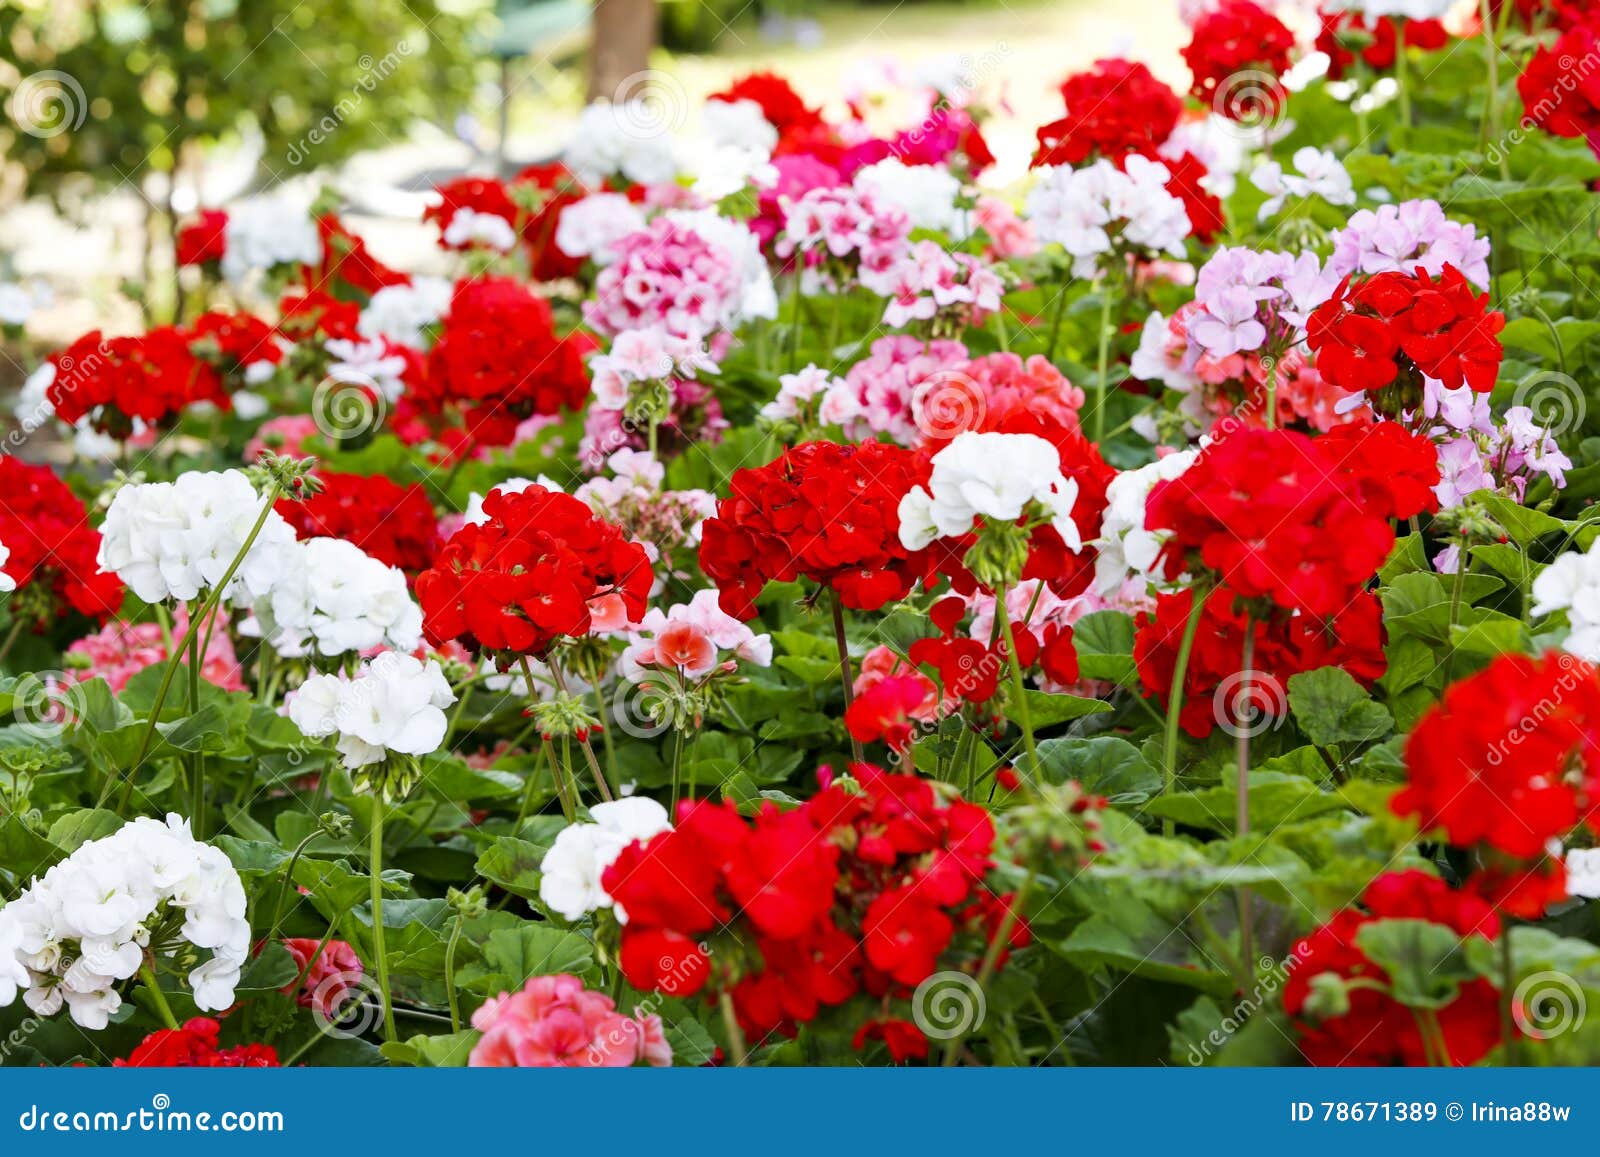 O Canteiro De Flores Do Gerânio Com O Gerânio Branco, Cor-de-rosa E  Vermelho Misturado Floresce Imagem de Stock - Imagem de jardinar, etiqueta:  78671389